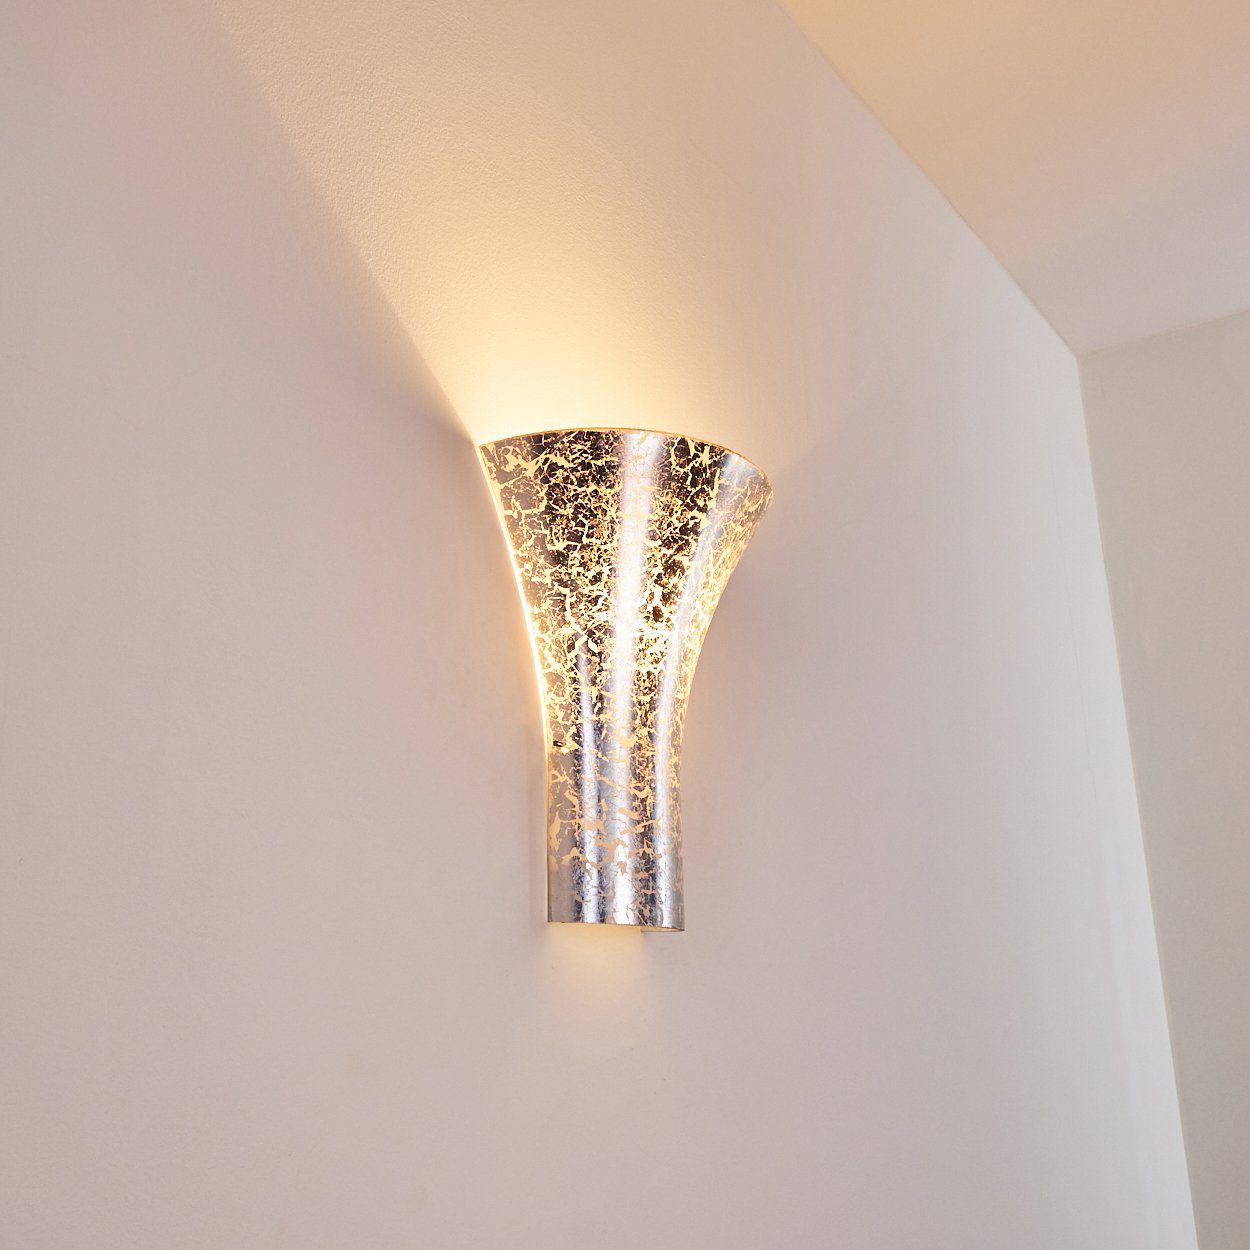 Wandleuchte moderne Leuchtmittel, aus der Innen mit hofstein in ohne »Auletta« Wandlampe an 1xE27, Metall/Glas Wand, Lichteffekt mit Silber, Lichtspiel